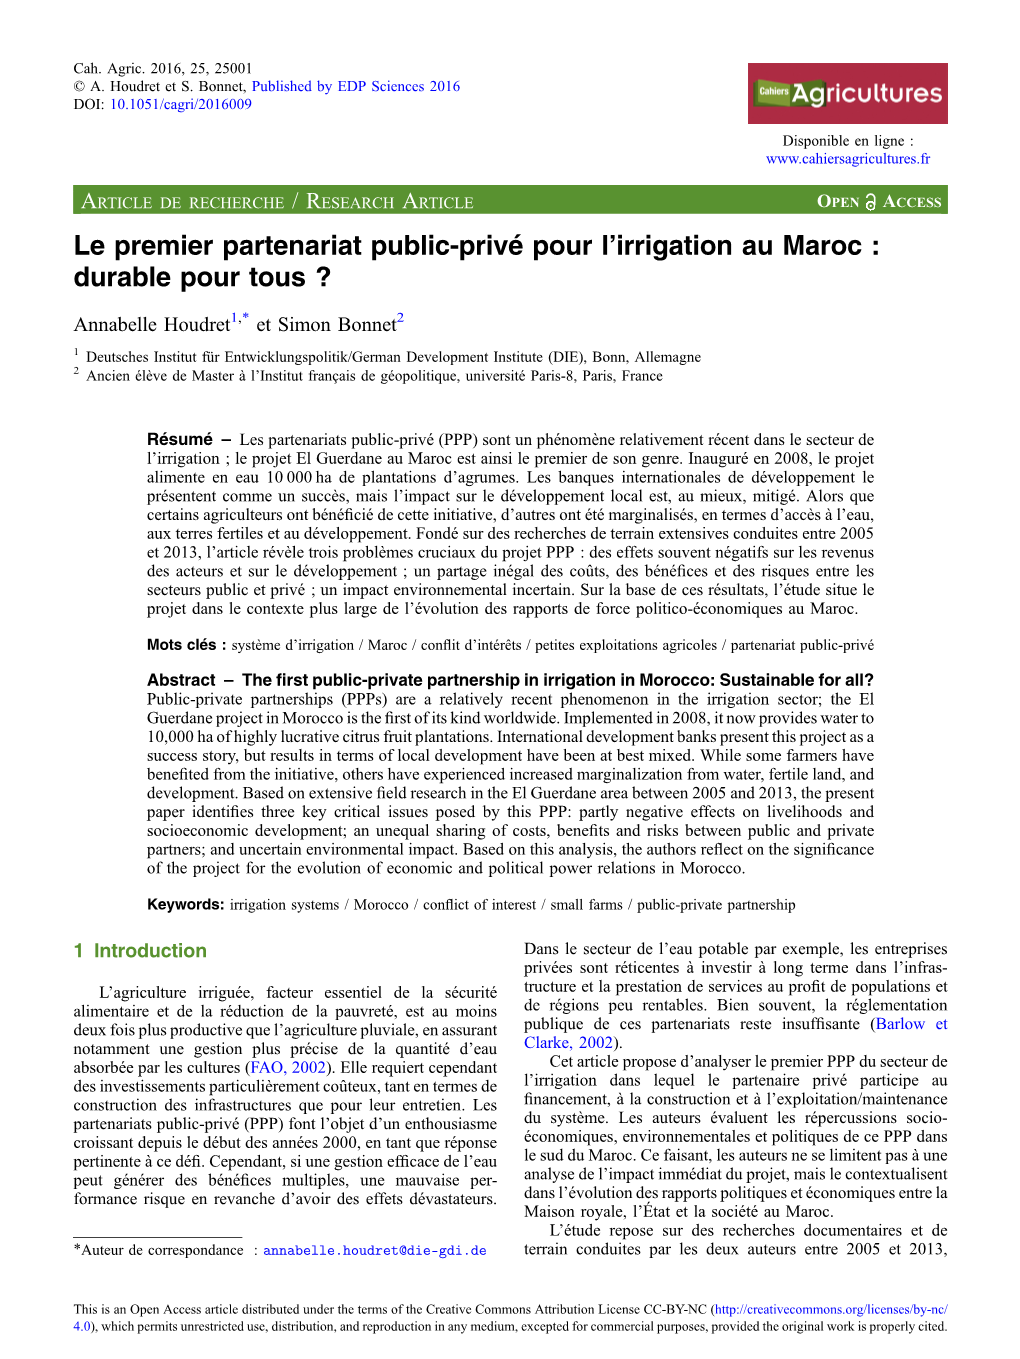 Le Premier Partenariat Public-Privé Pour L'irrigation Au Maroc